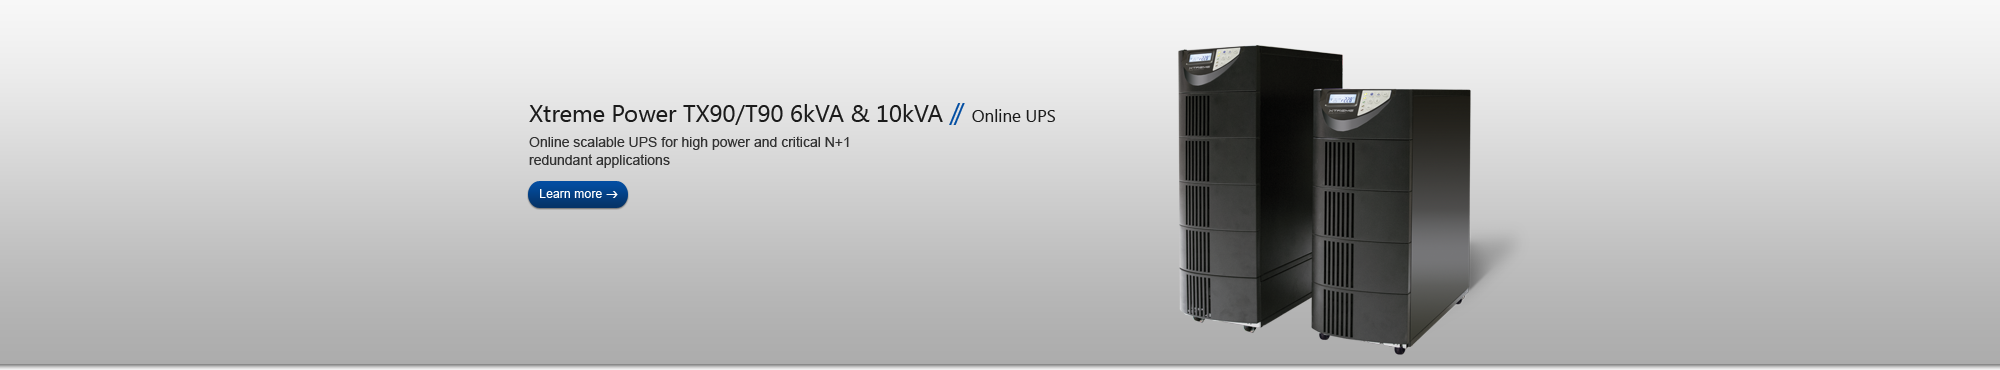 TX90/T90 6kVA & 10kVA Online UPS